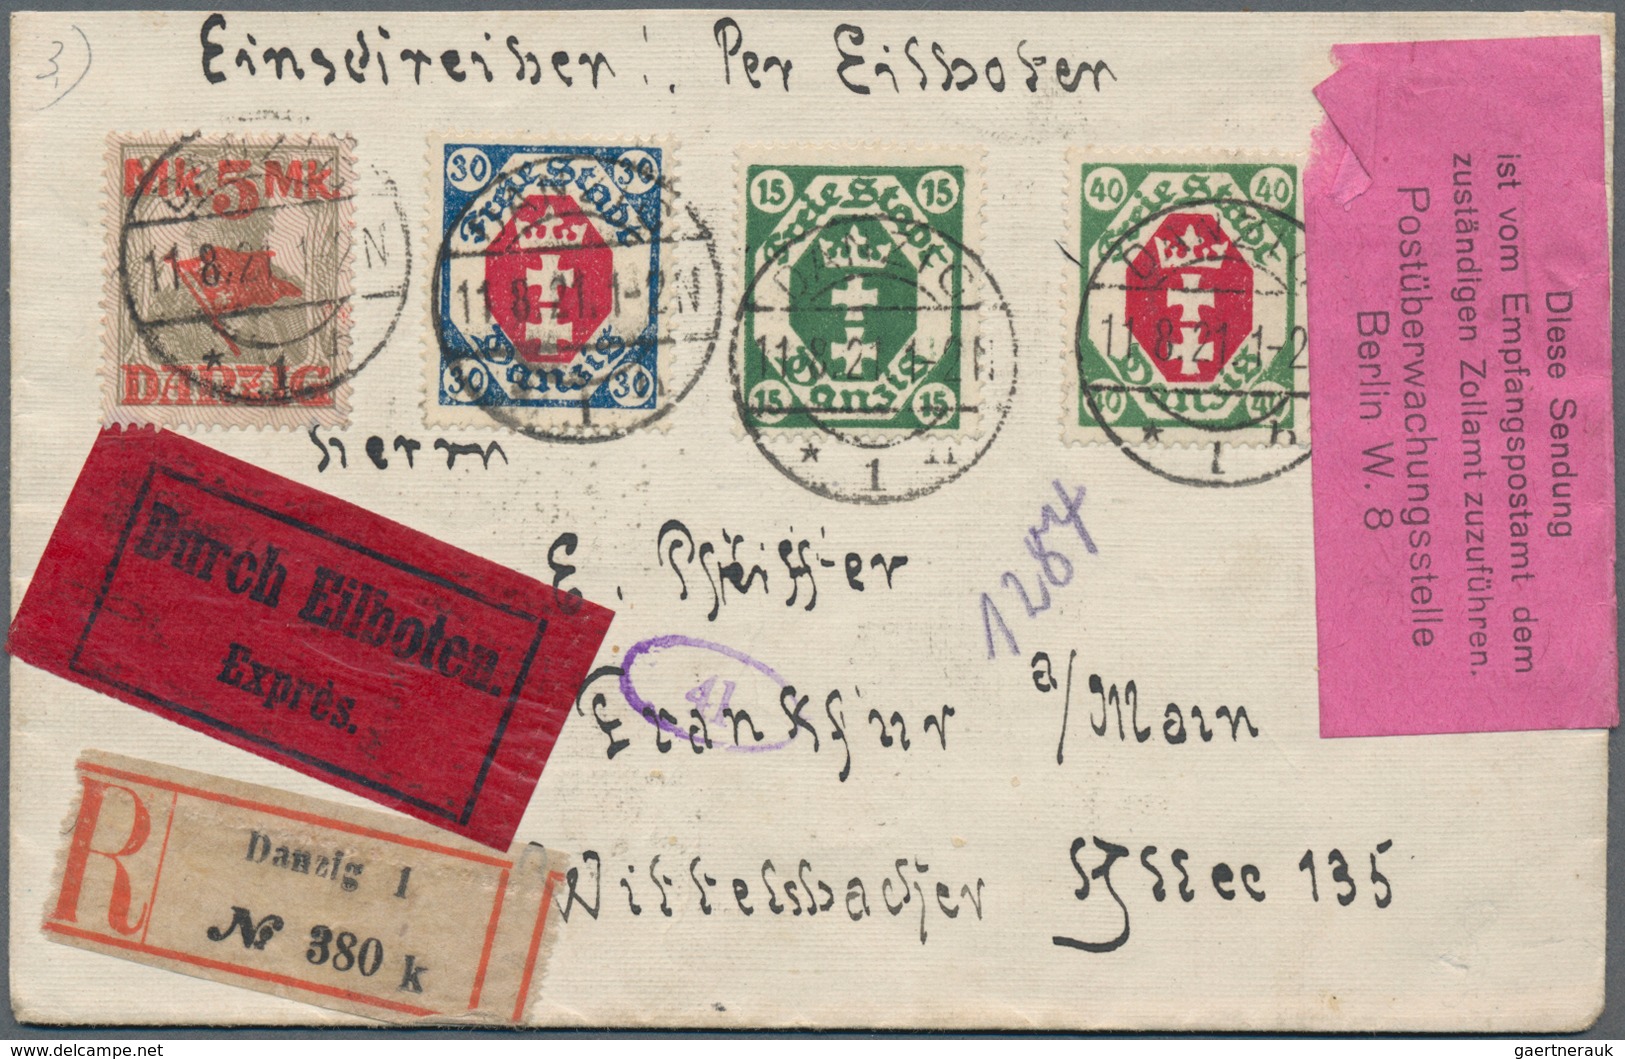 Danzig: 1920/1939, vielseitige Partie von ca. 108 Briefen und Karten mit Bedarfspost und attraktiven